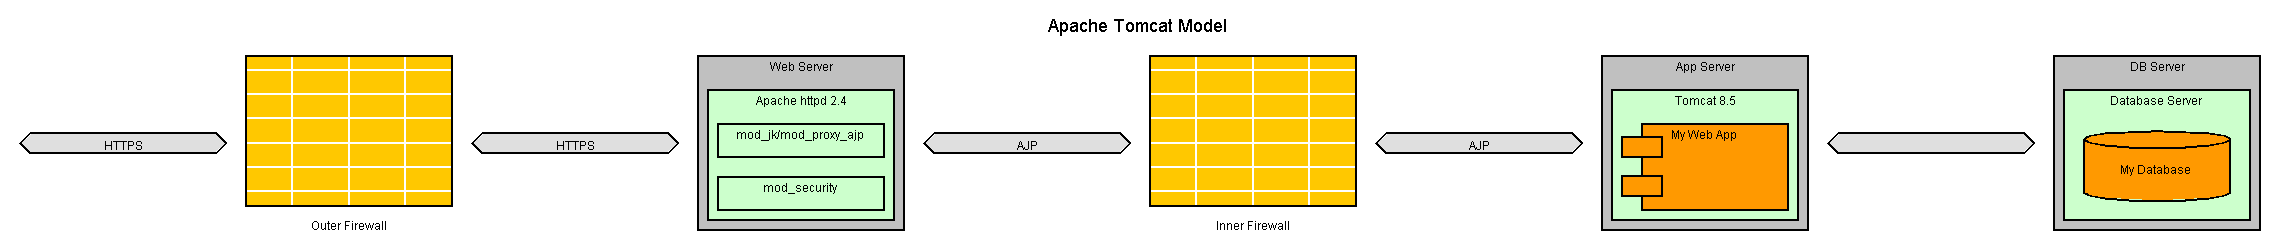 -firewall-httpd-firewall-Tomcat